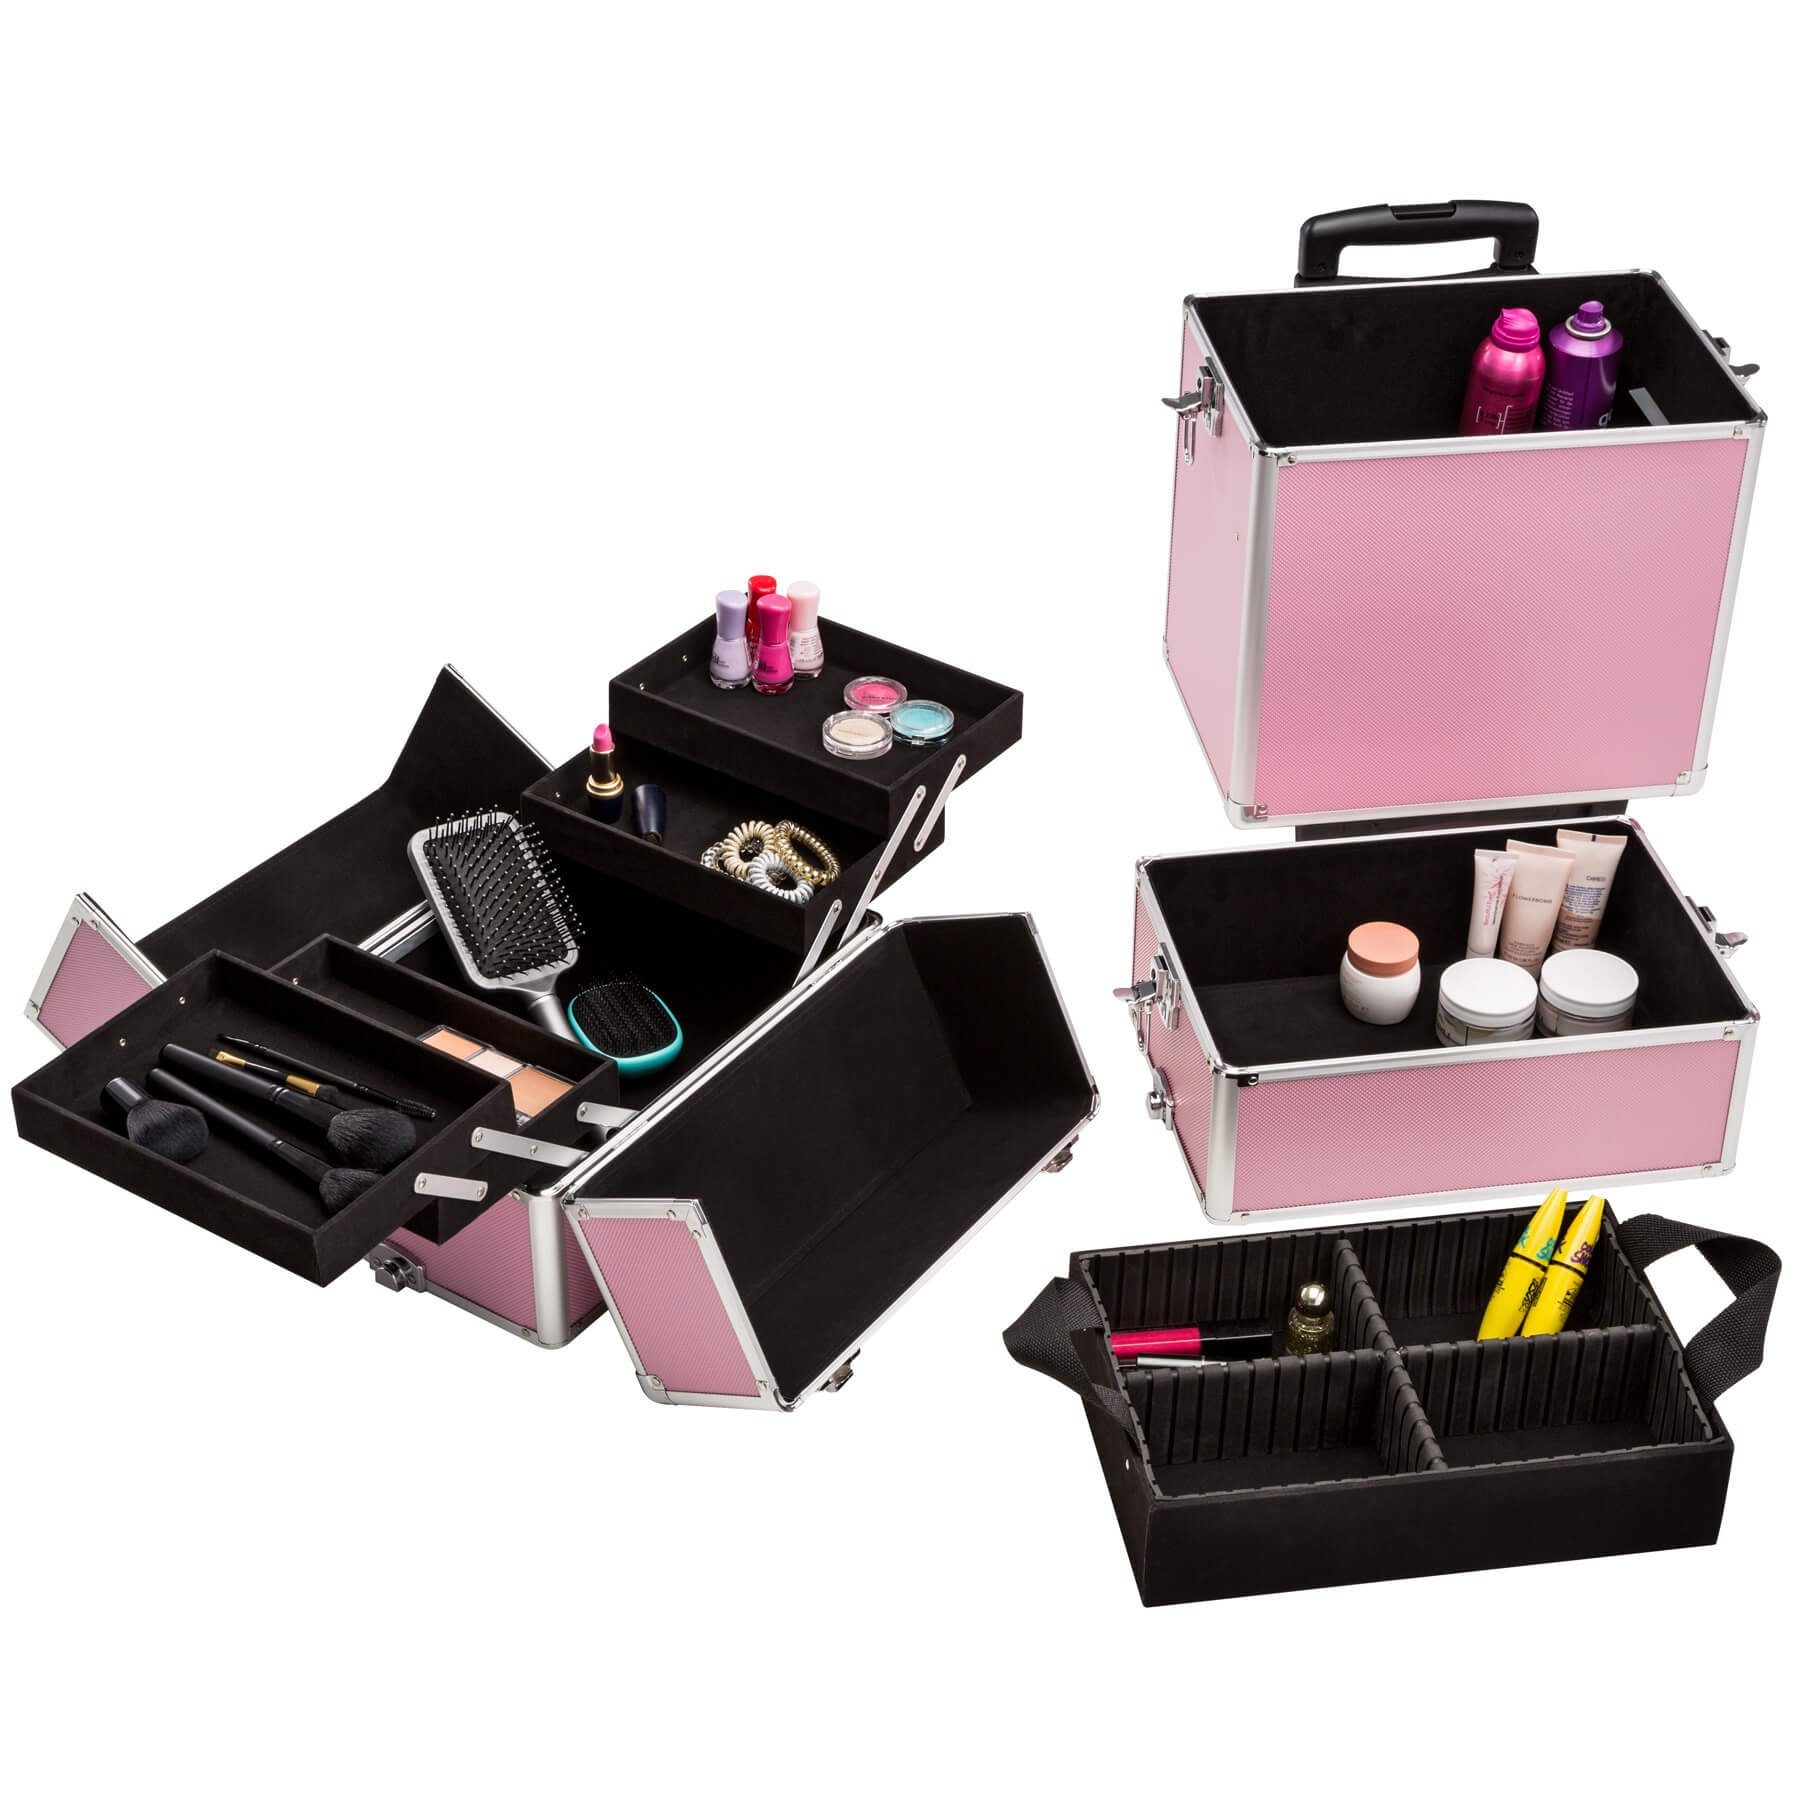 pink 2 Rollen, Etagen, erweiterbar tectake Kosmetiktrolley 3 Koffer mit